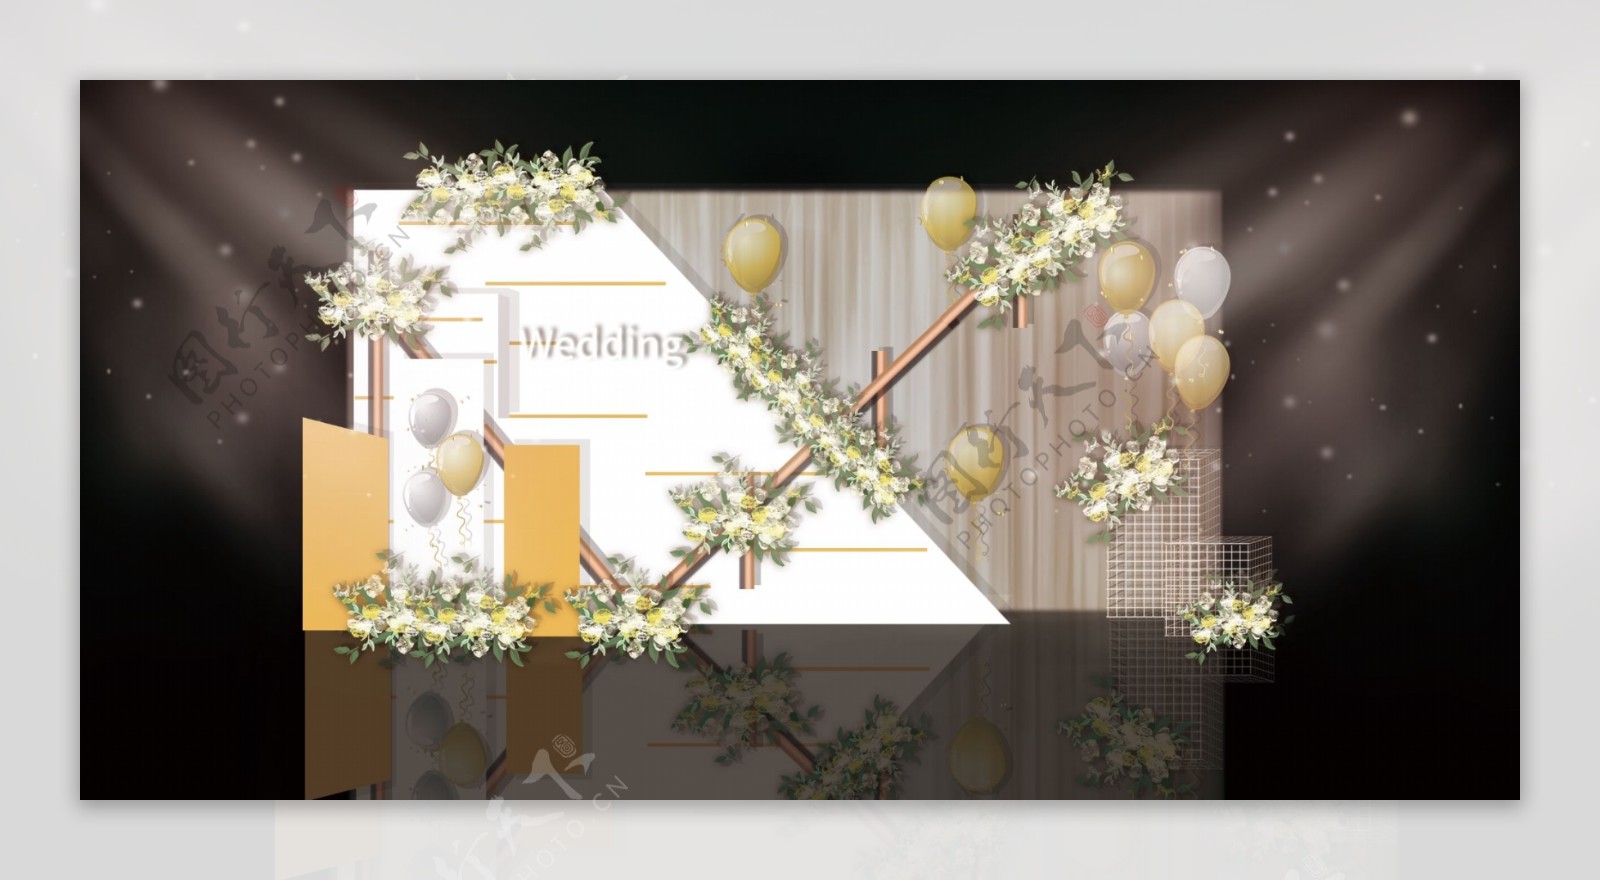 黄白色迎宾婚礼效果图